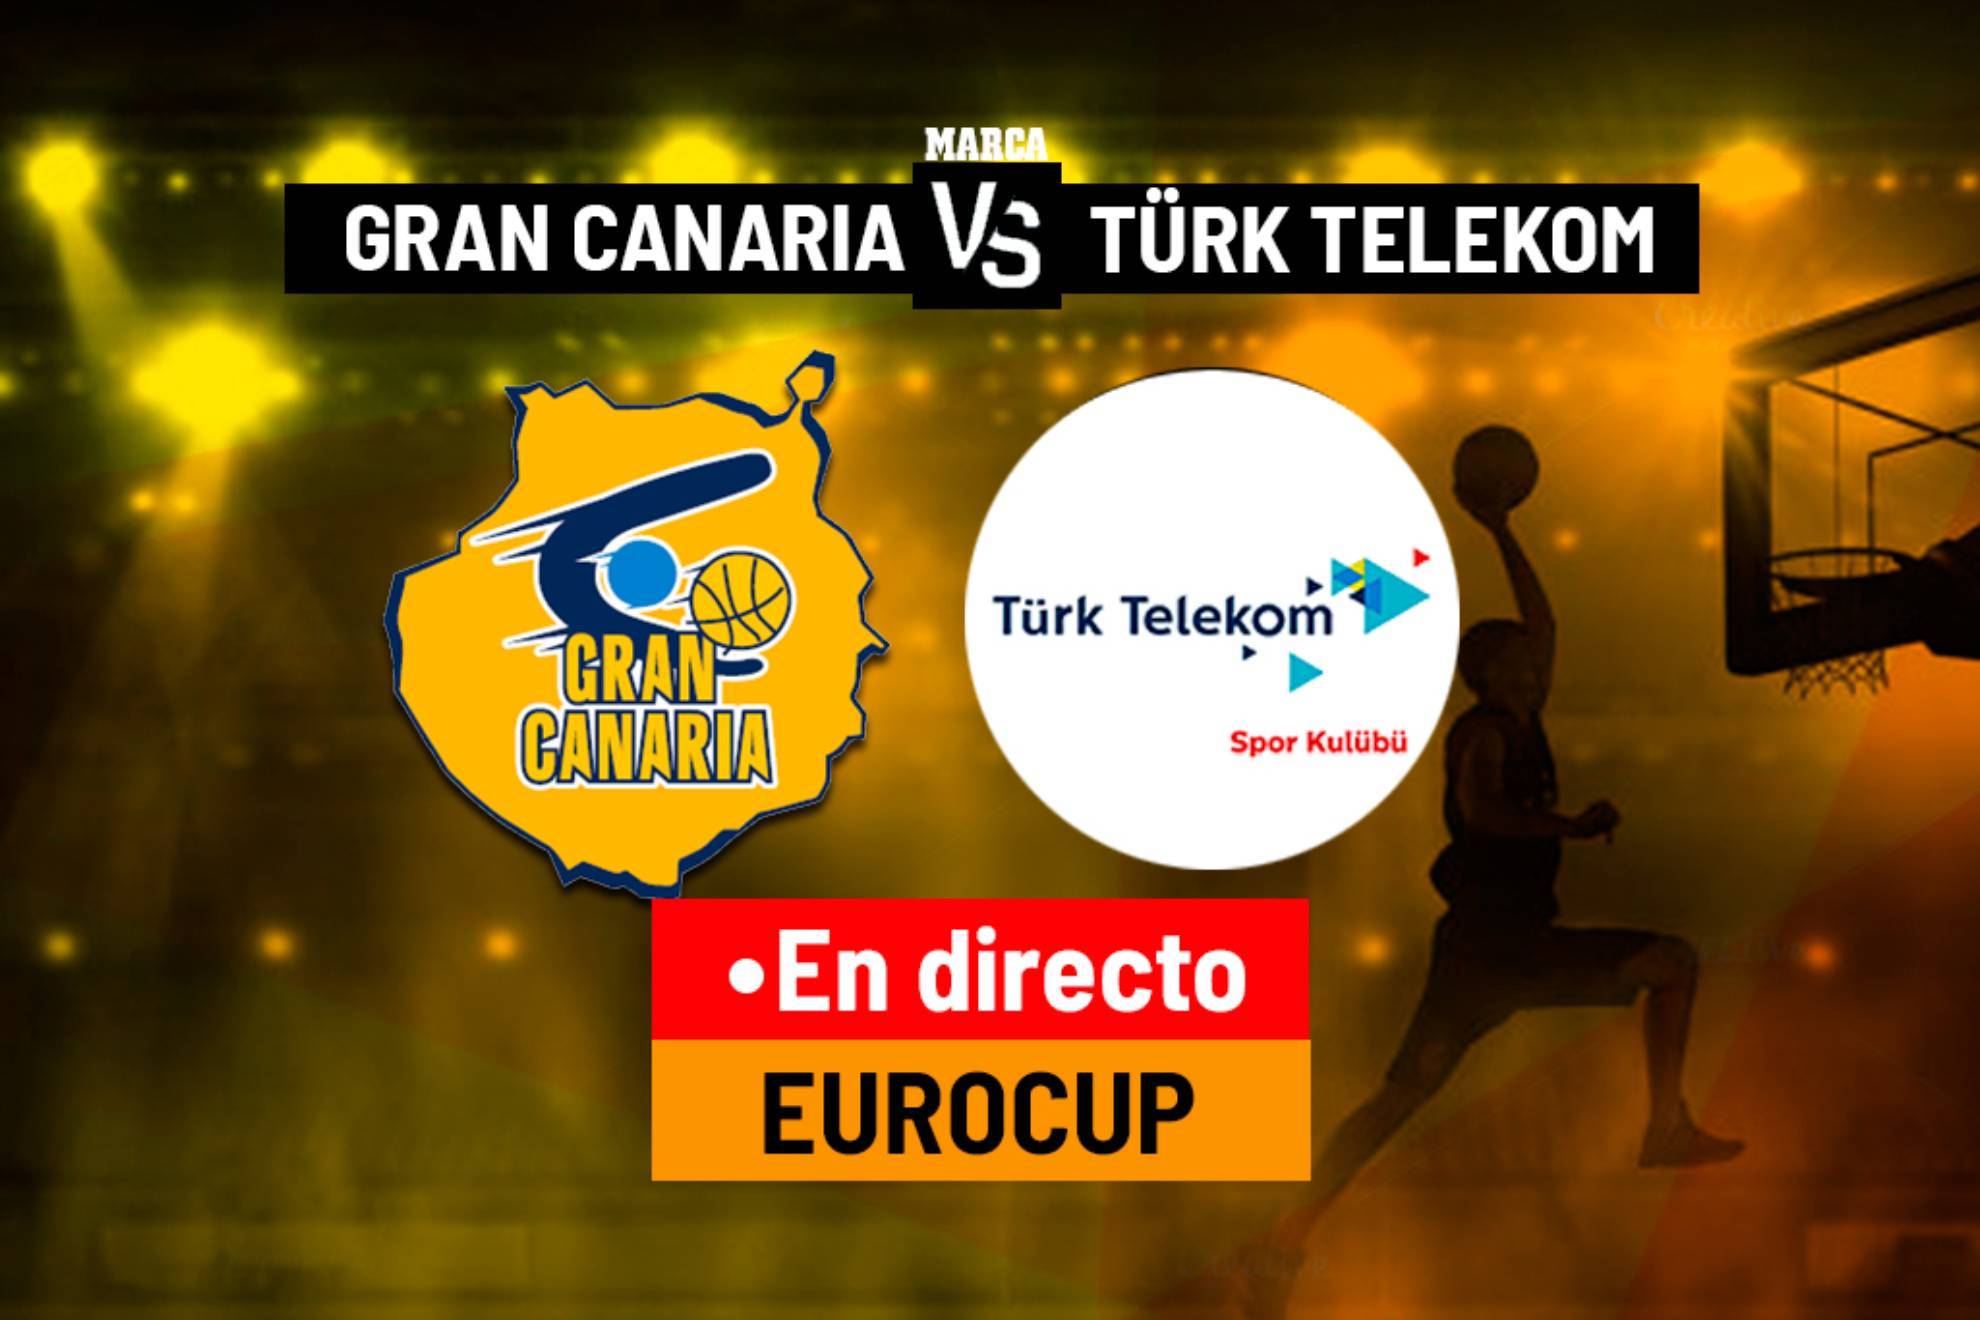 CB Gran Canaria - Turk Telekom: resumen, resultado y estadística